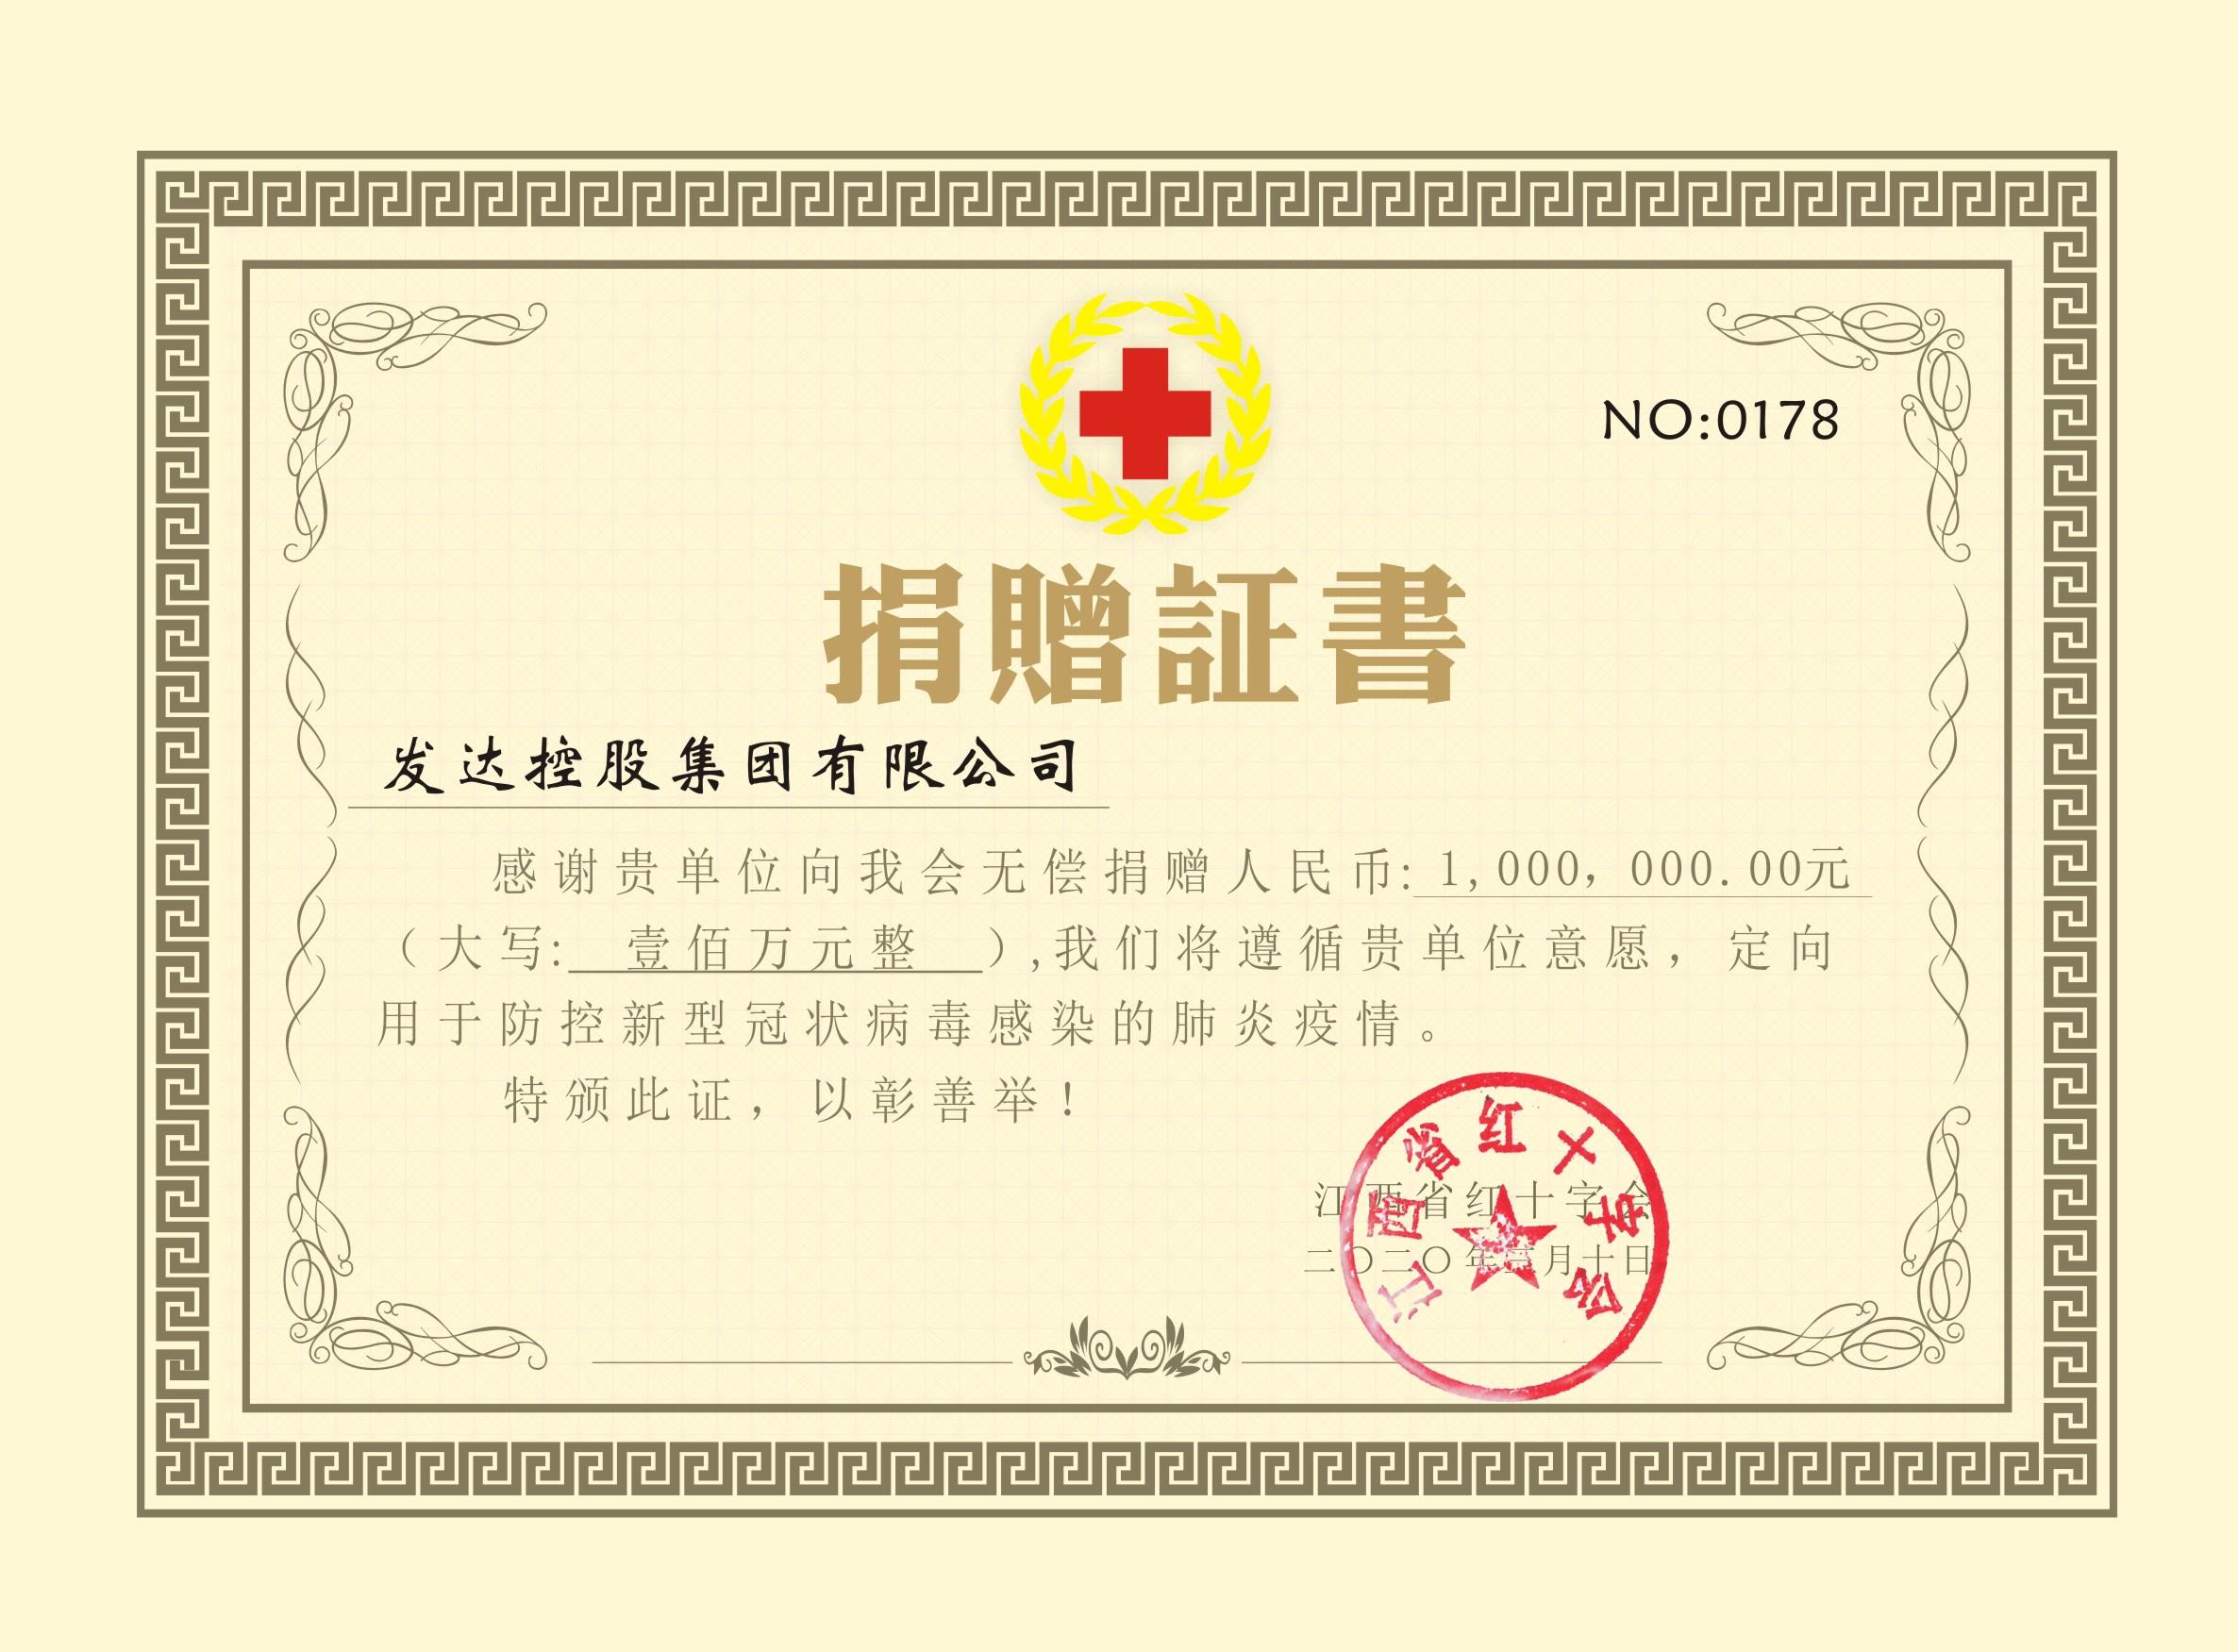 集团向江西红十字会捐赠100万元抗击疫情